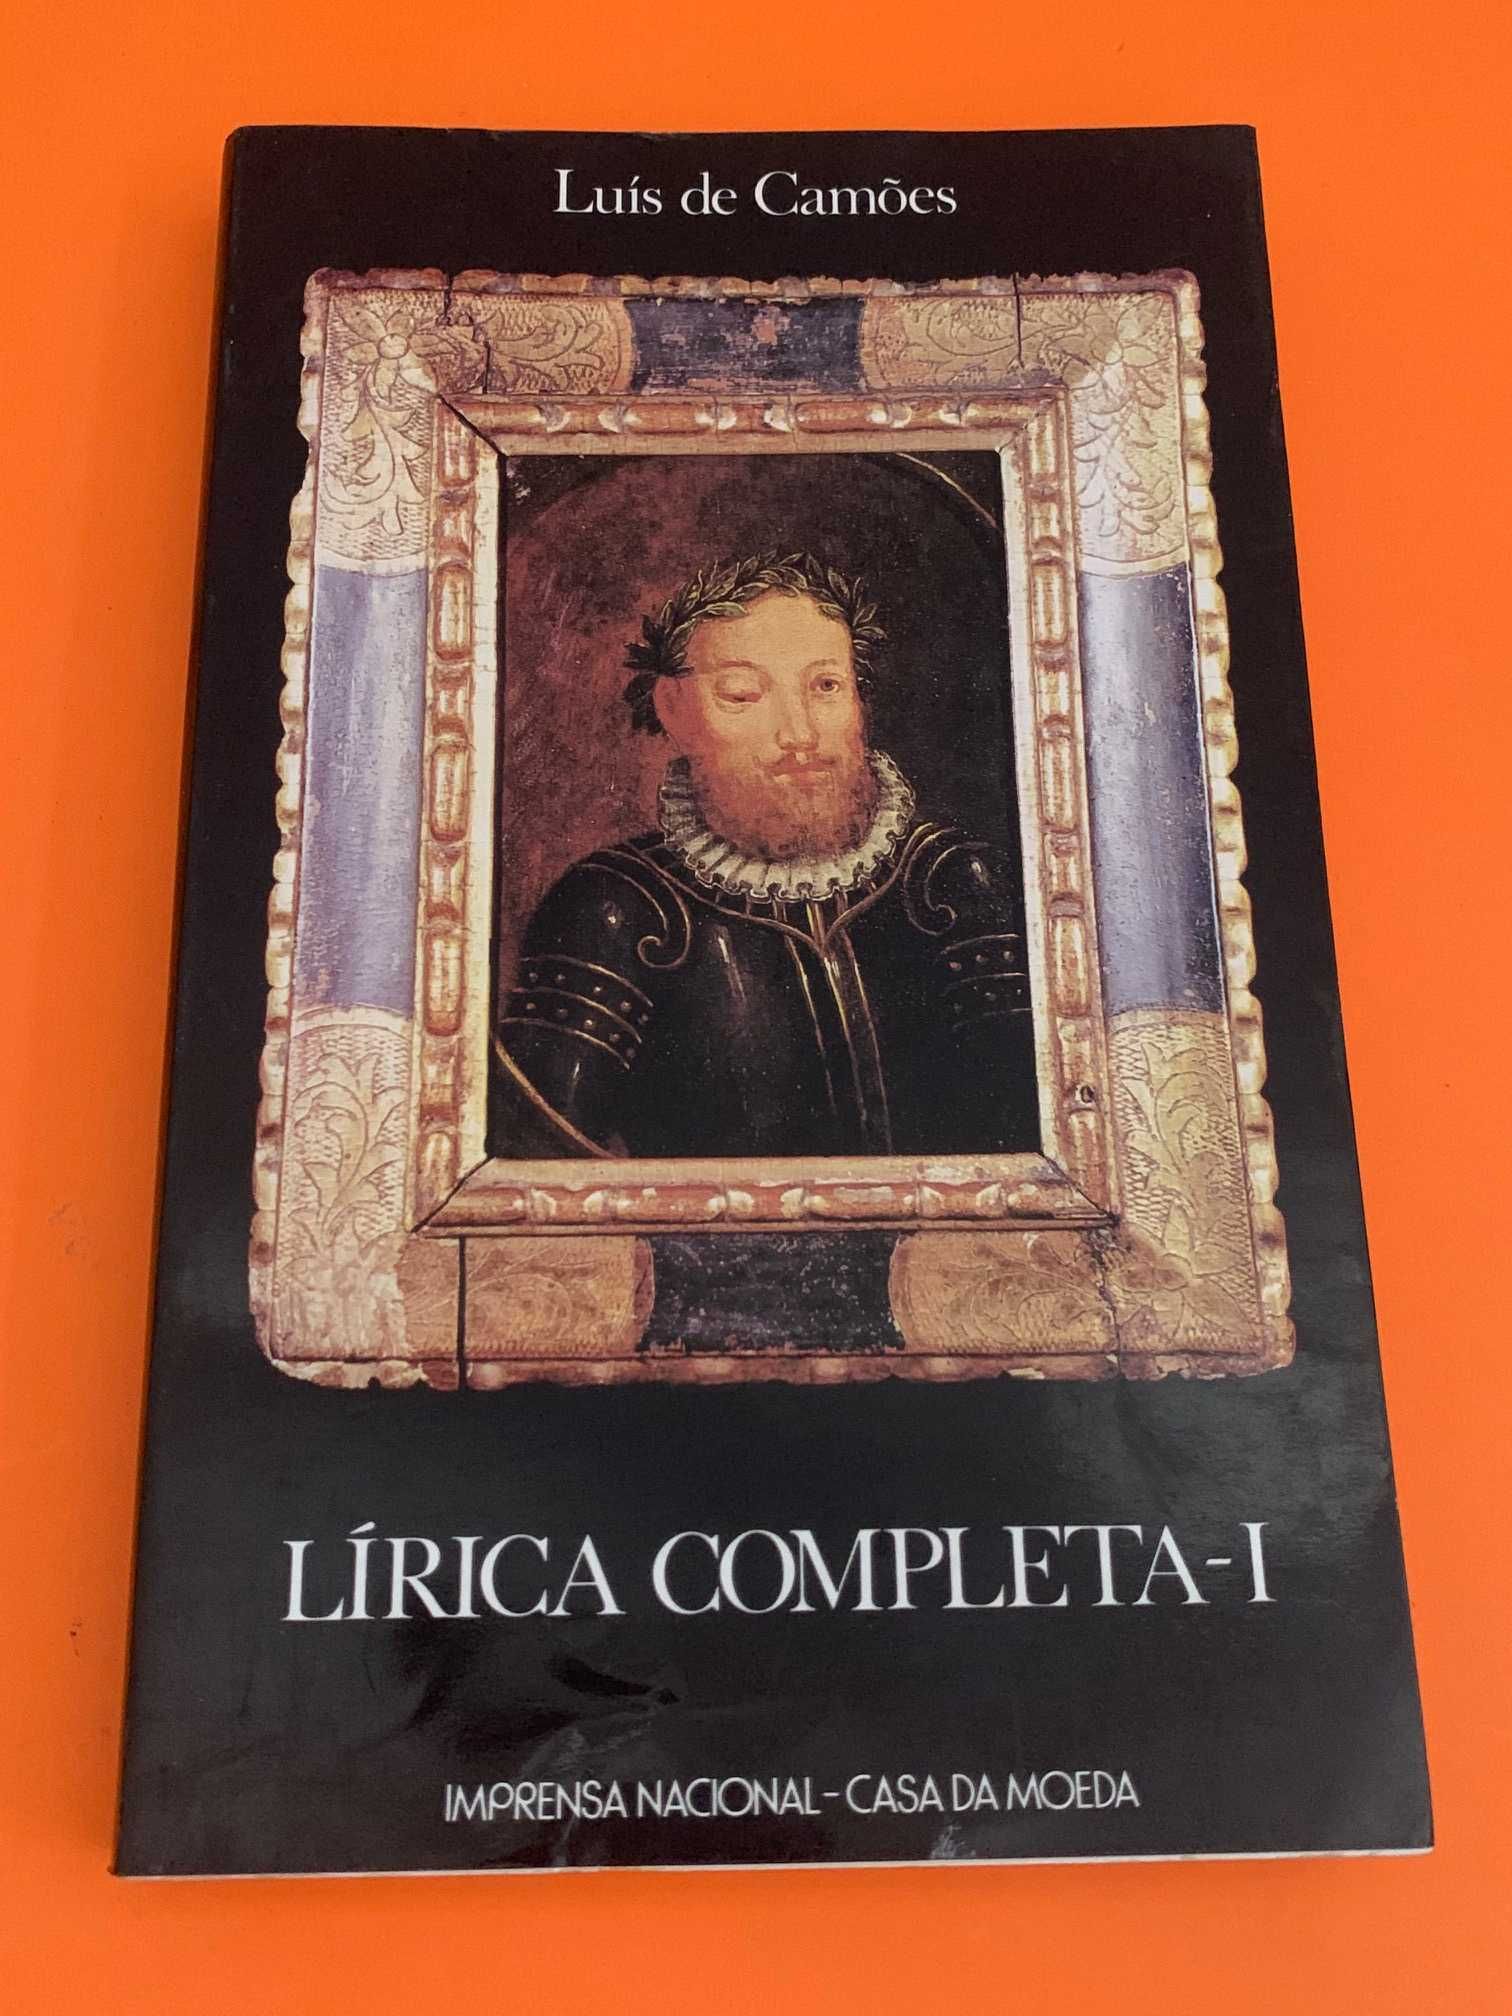 Lírica completa I - Luís de Camões